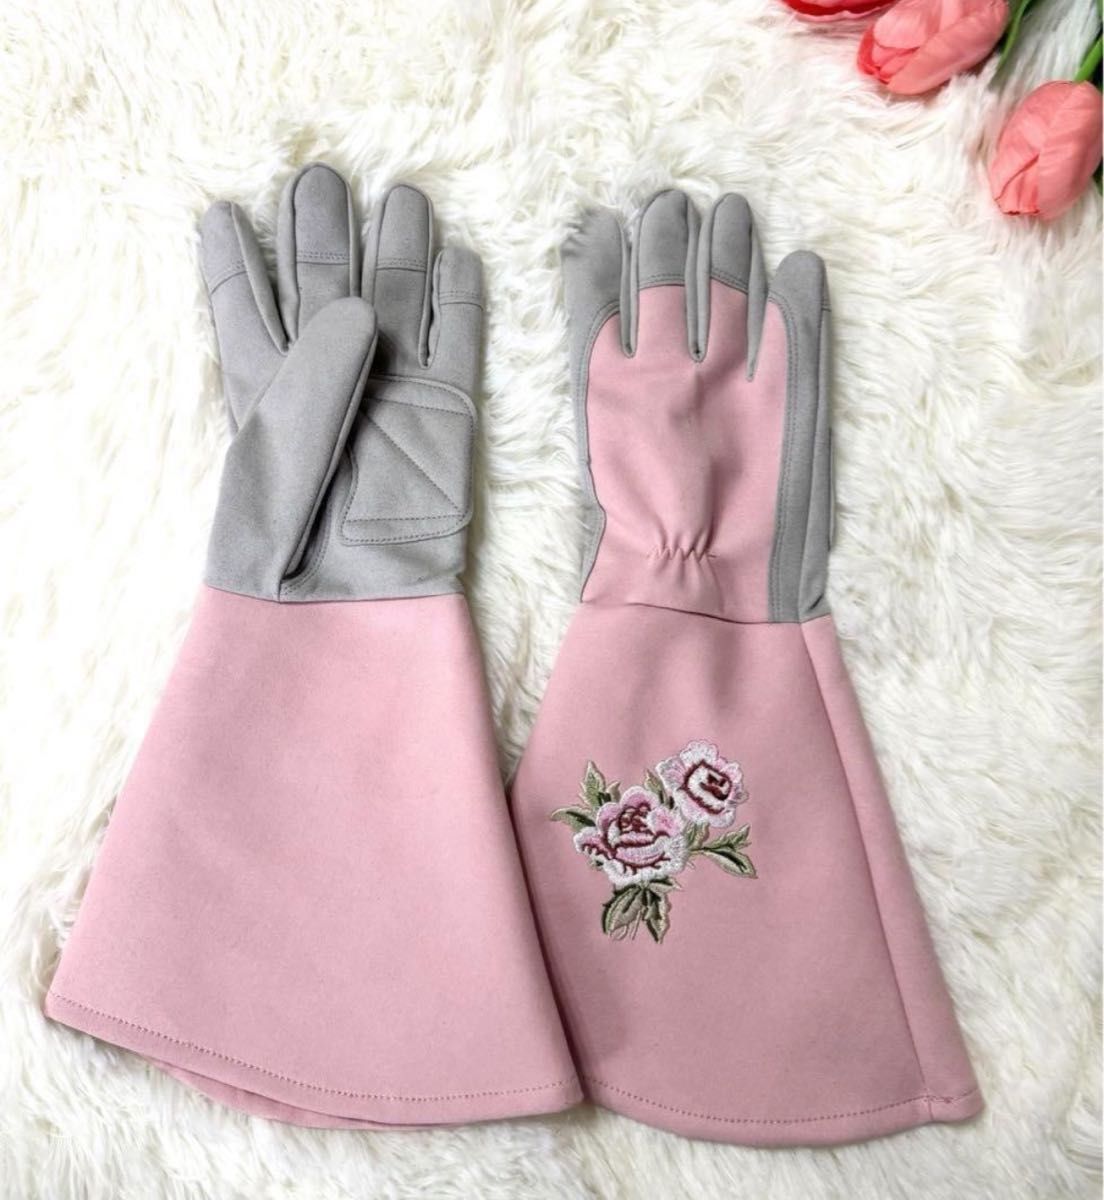 園芸用手袋 ガーデニングローブ 母の日 プレゼント　薔薇　バラ手袋 園芸手袋  ピンク